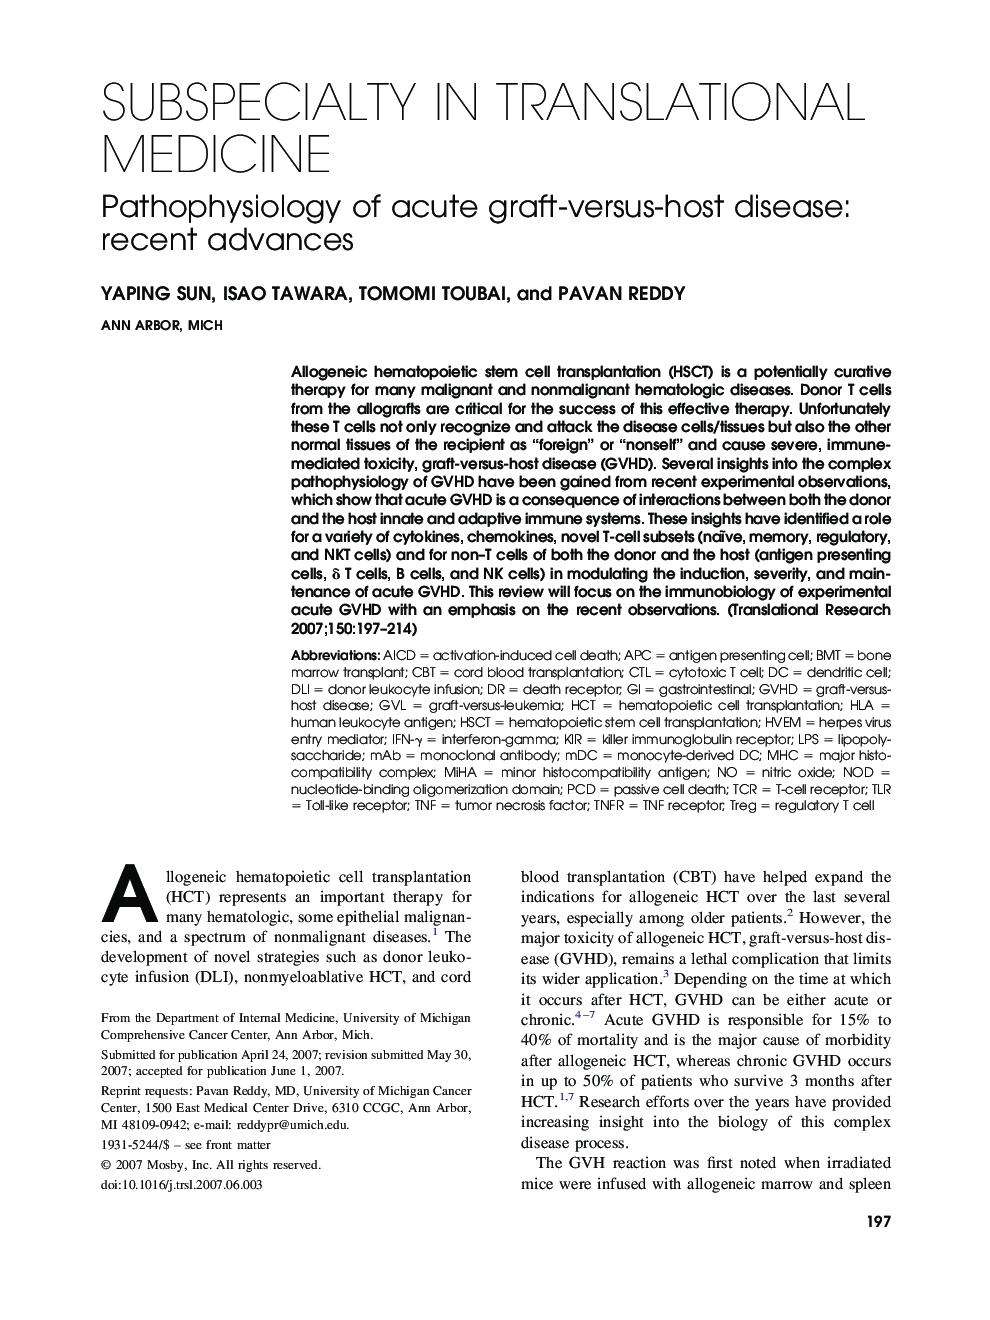 Pathophysiology of acute graft-versus-host disease: recent advances